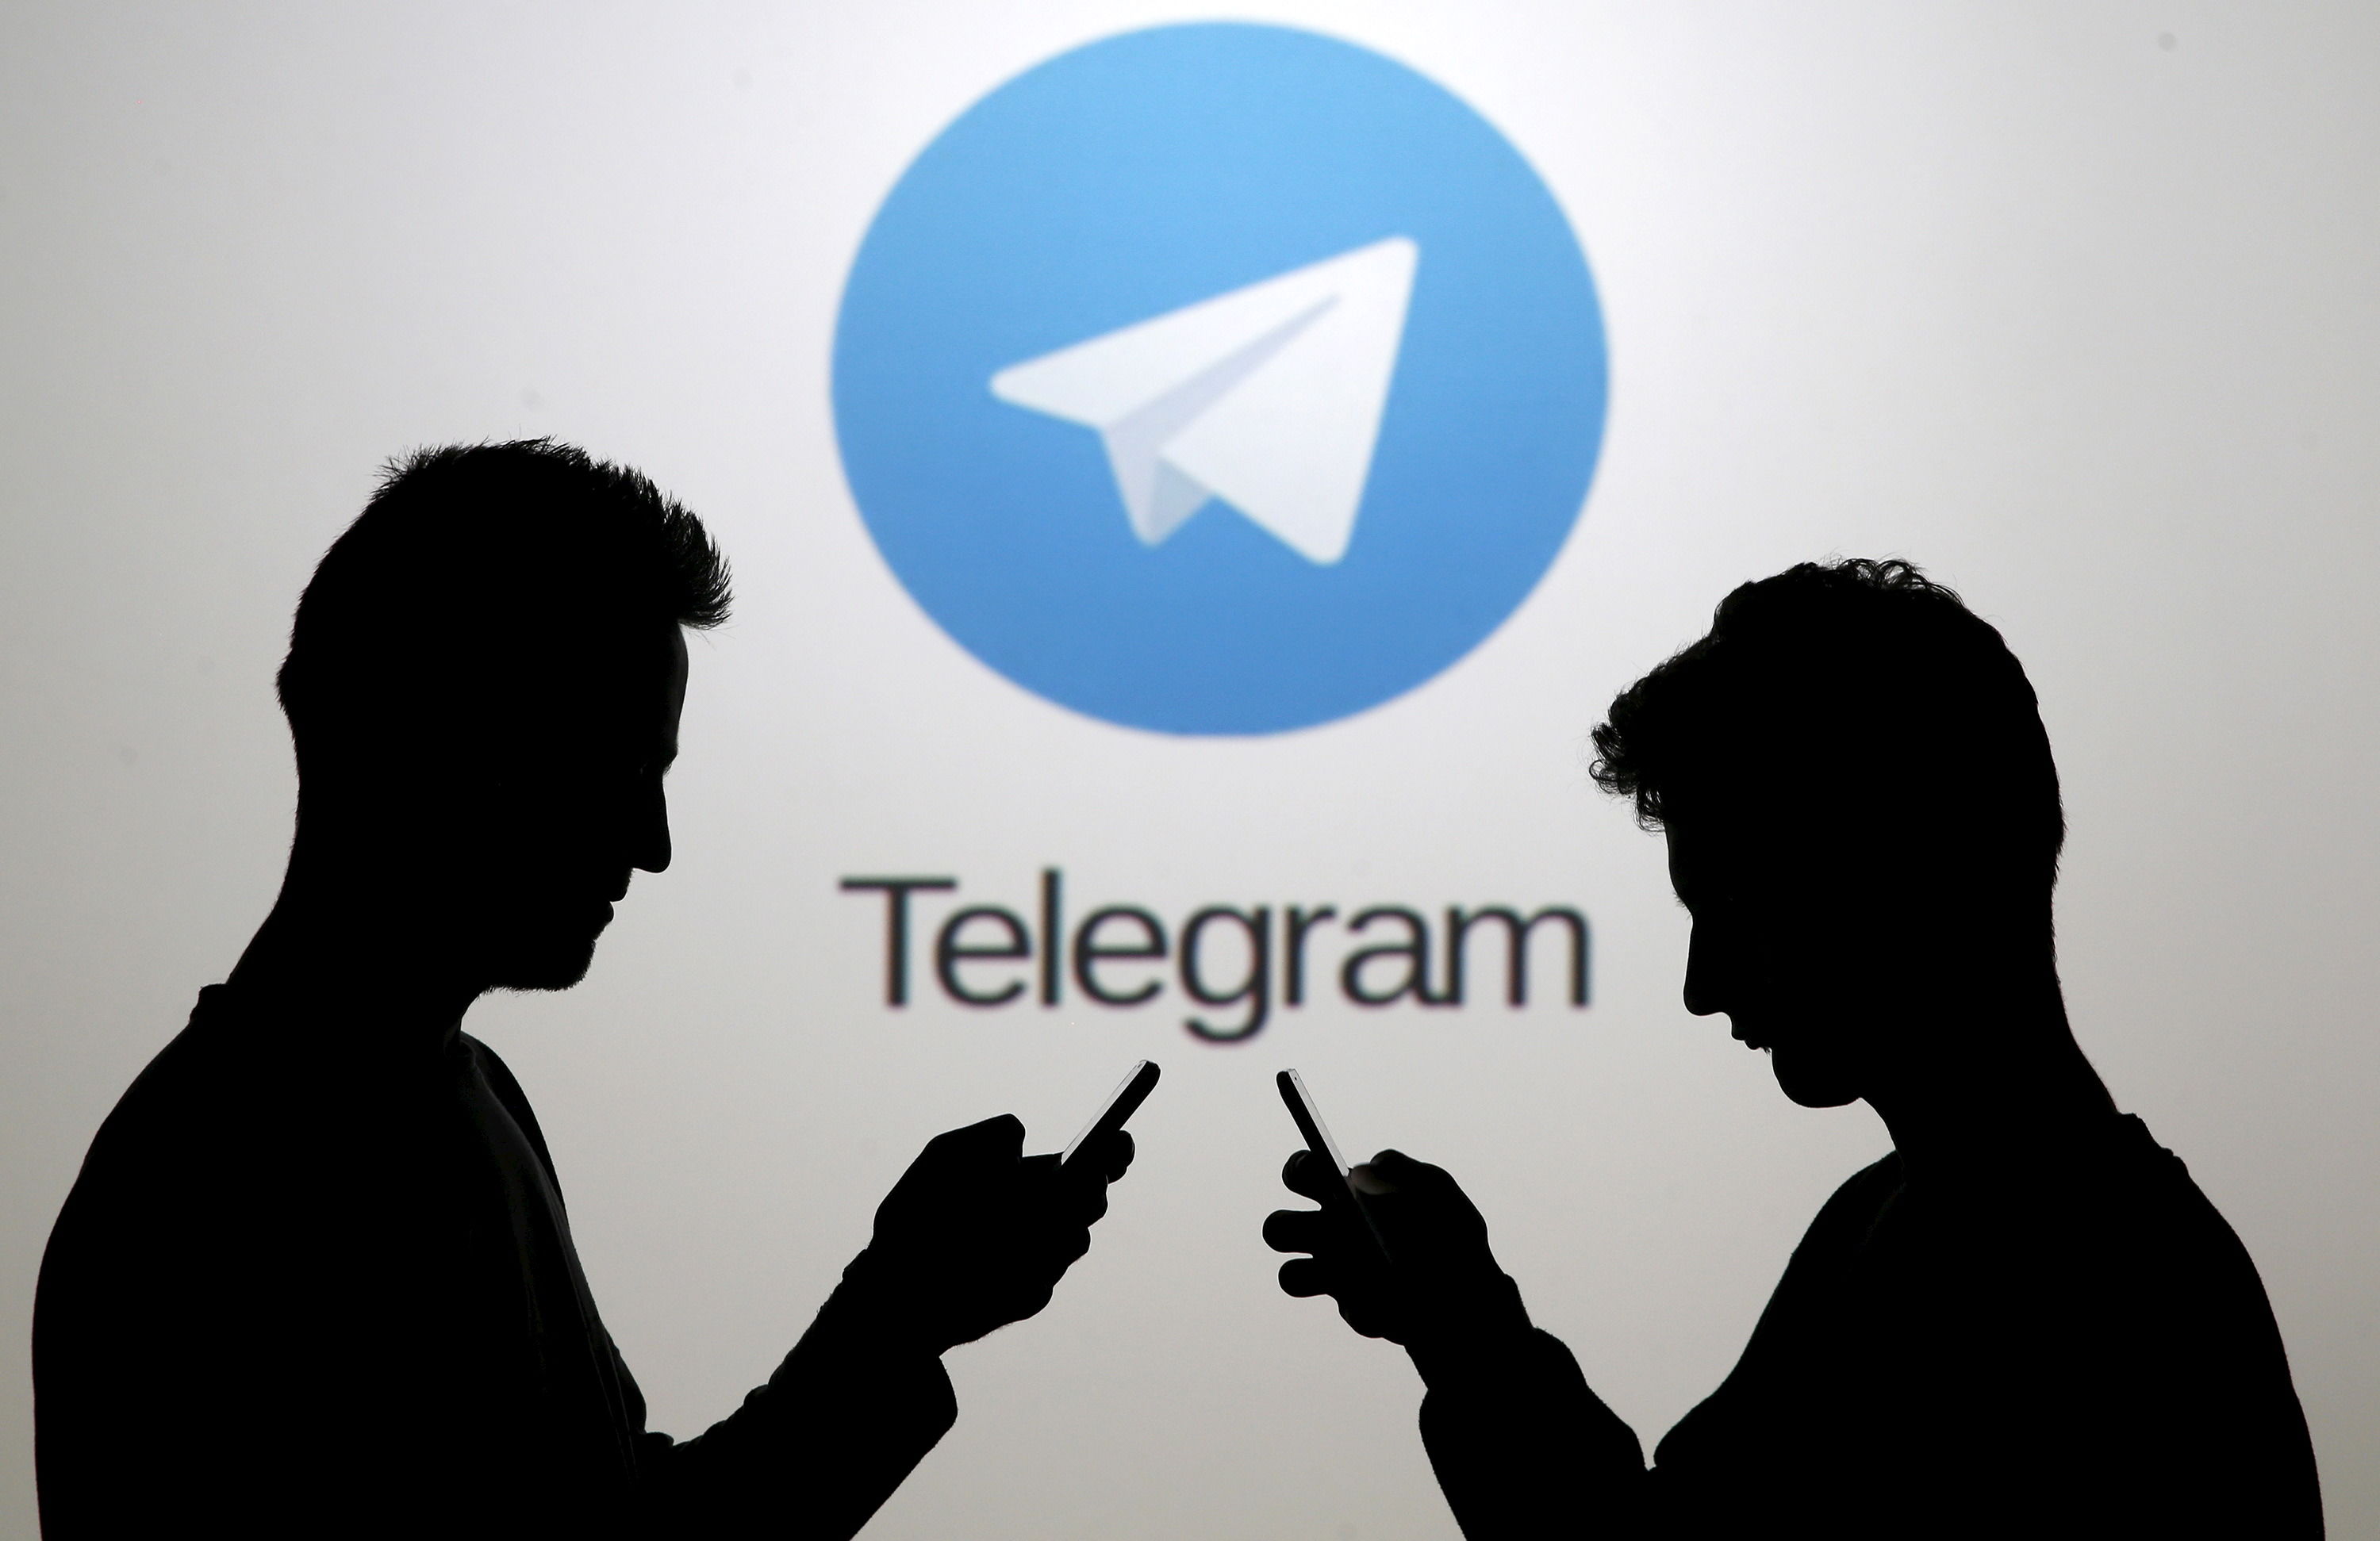 واکنش واعظی به اظهارات اخیر معاون دادستان کل کشور در مورد تلگرام